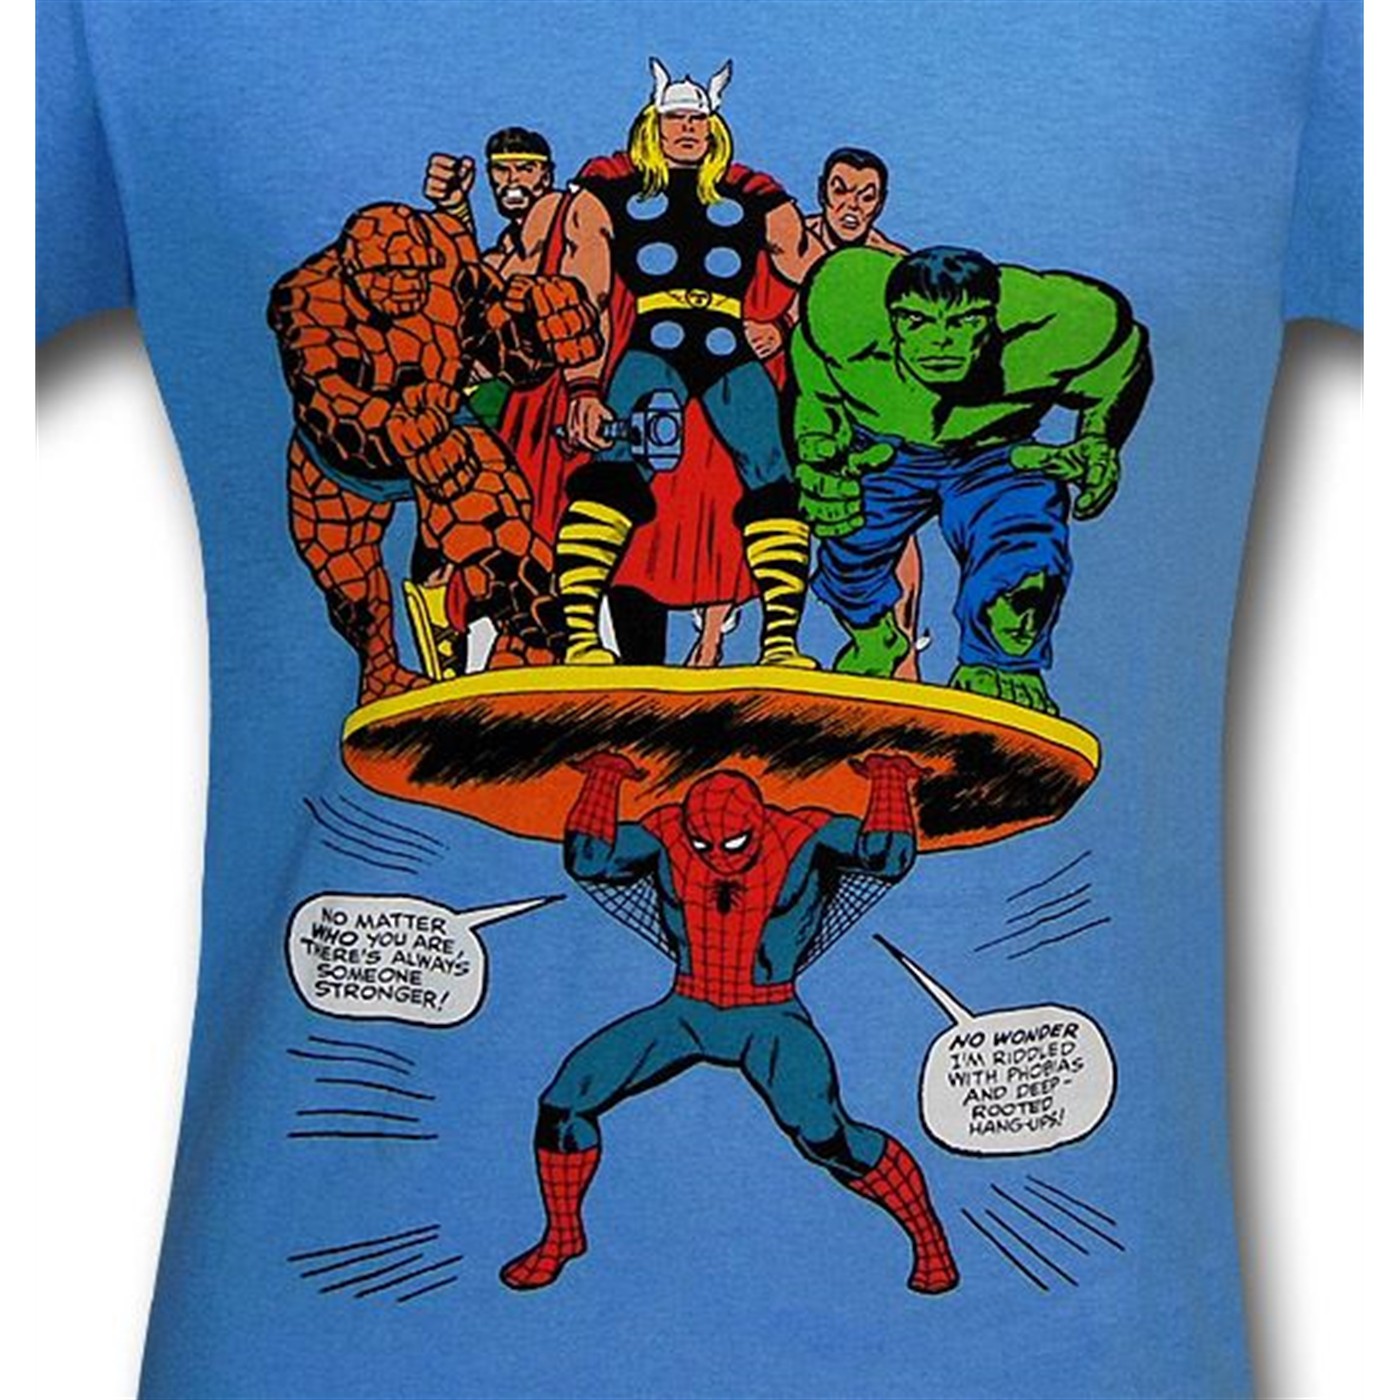 Spiderman Feats of Strength Light Blue T-Shirt